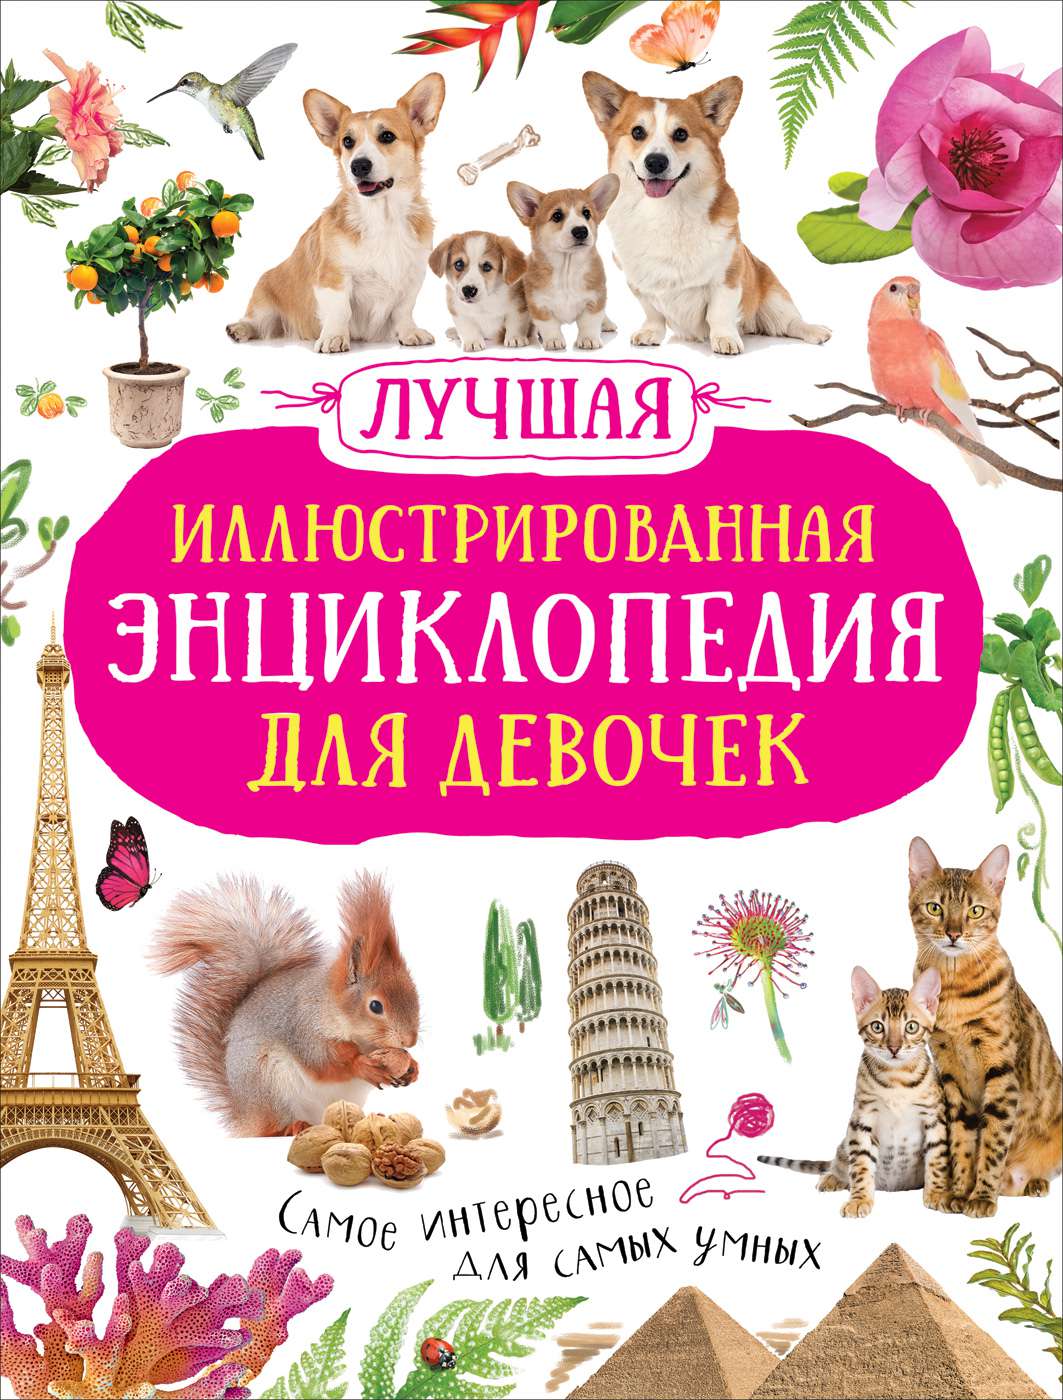 Книга 39081 Лучшая Энциклопедия для девочек Росмэн - Пенза 